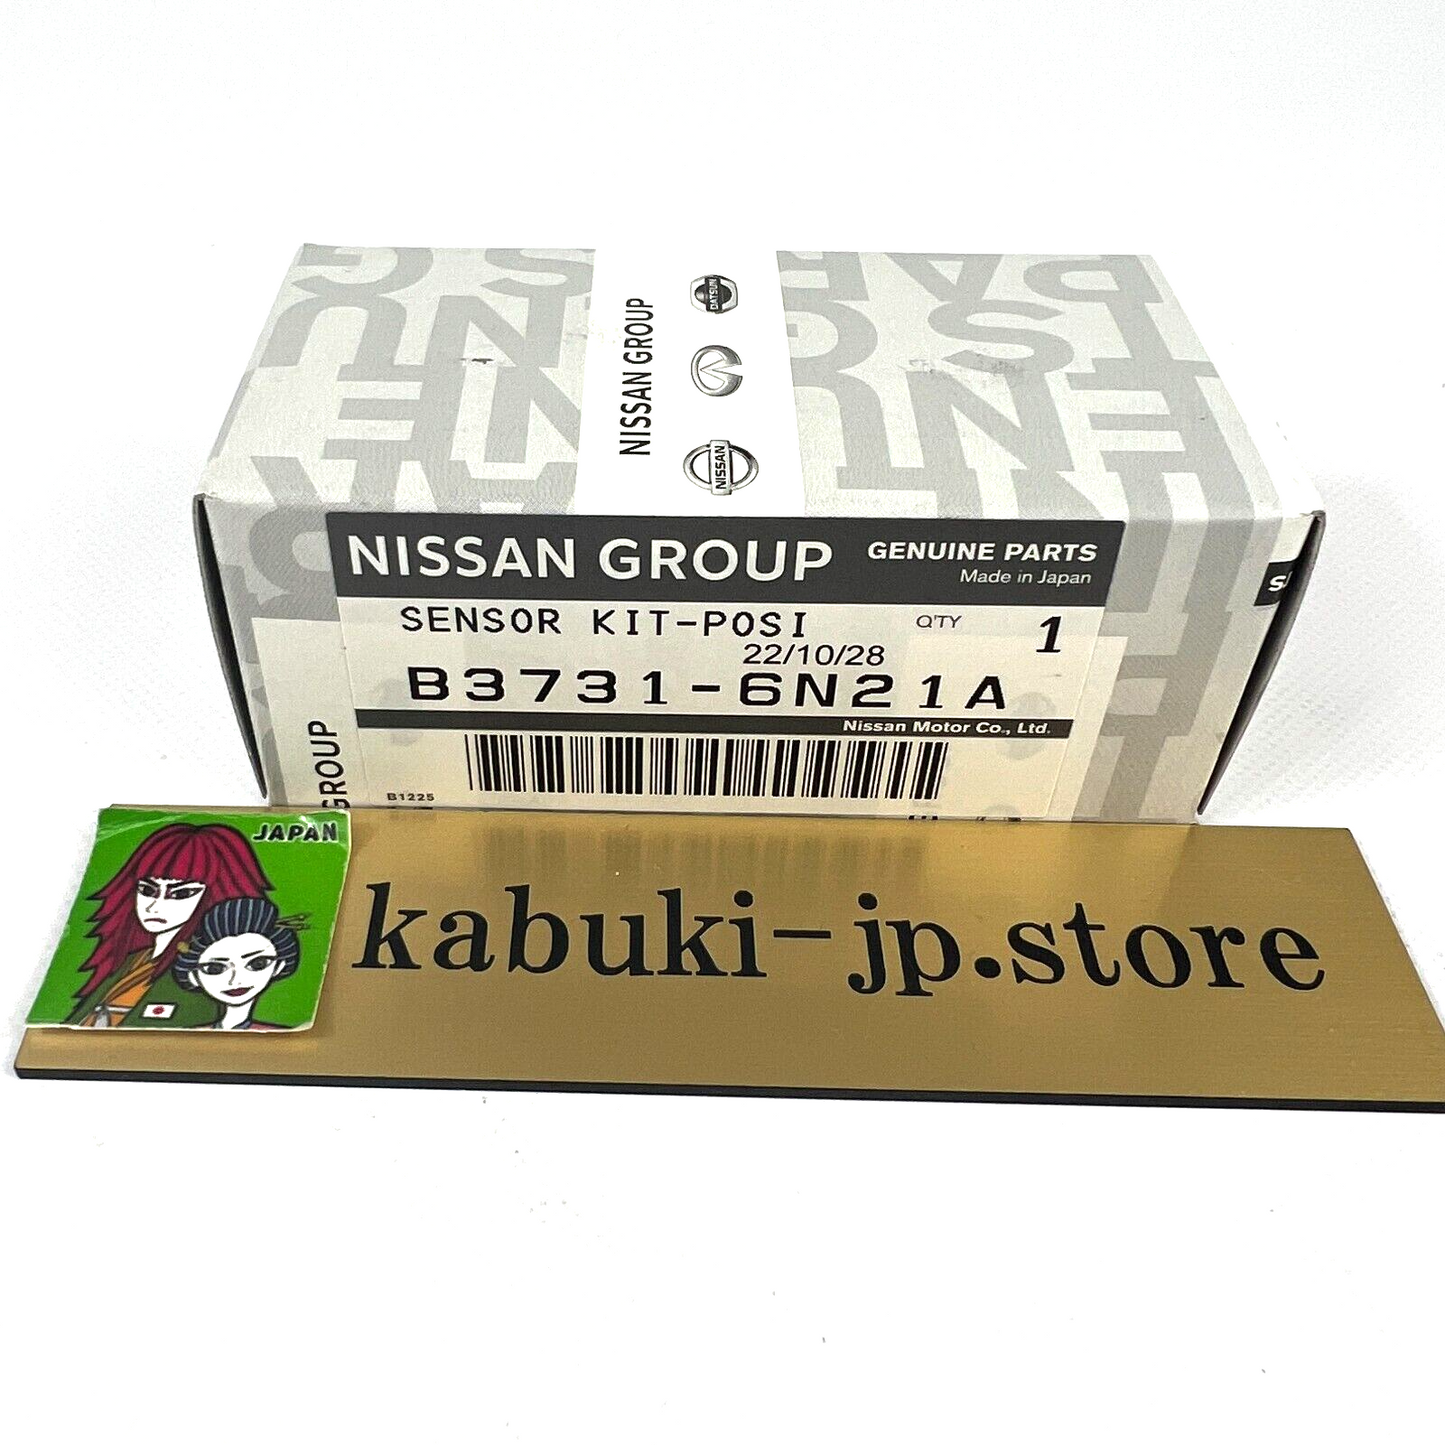 Nissan Genuine B3731-6N21A Altima Sentra Cam Crank Sensor Position Kit OEM Japan